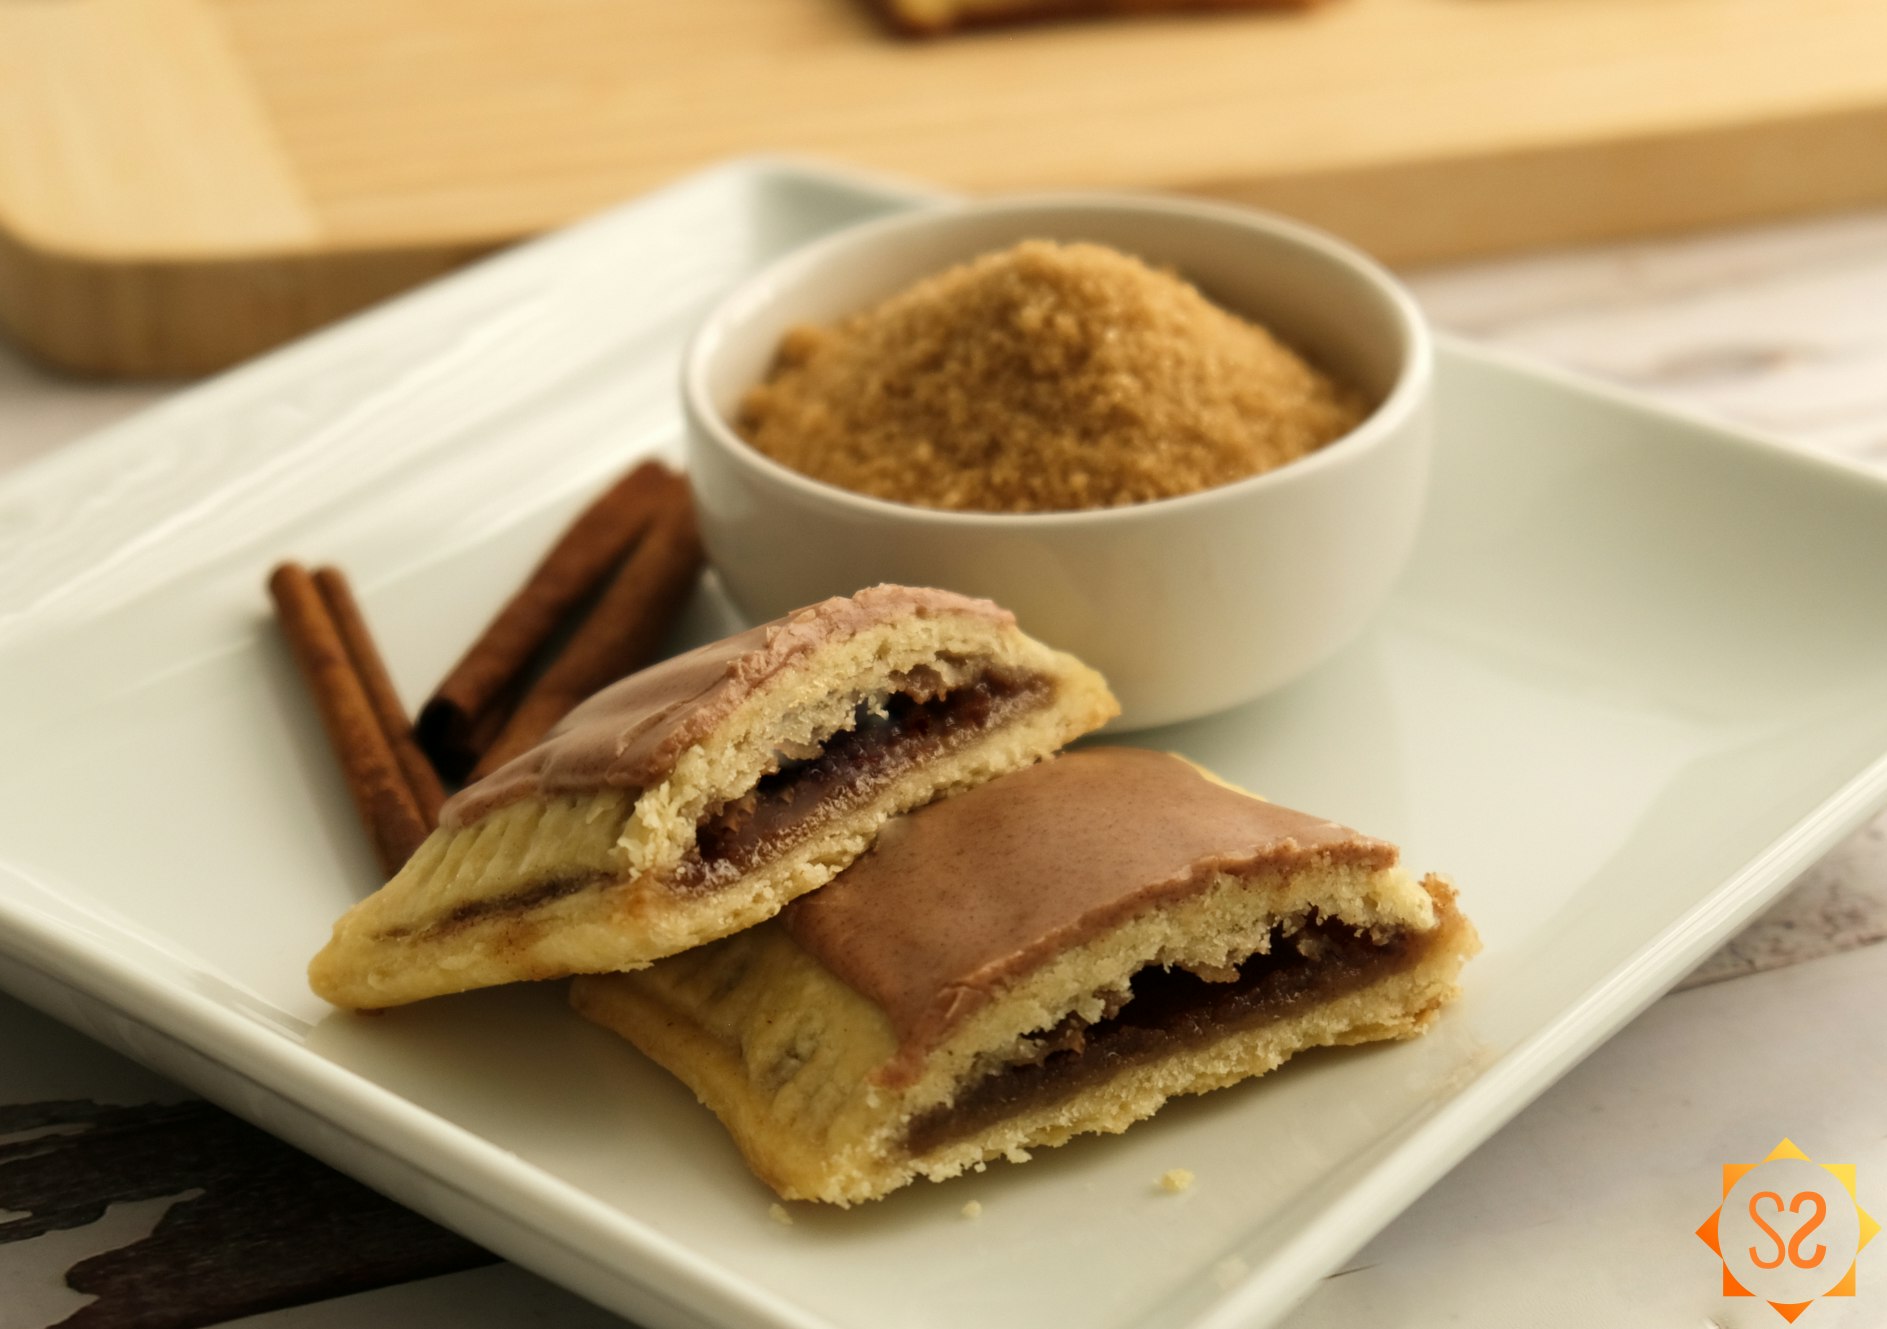 Homemade brown sugar and cinnamon Pop-tart on a plate with a dish of brown sugar and cinnamon sticks behind it